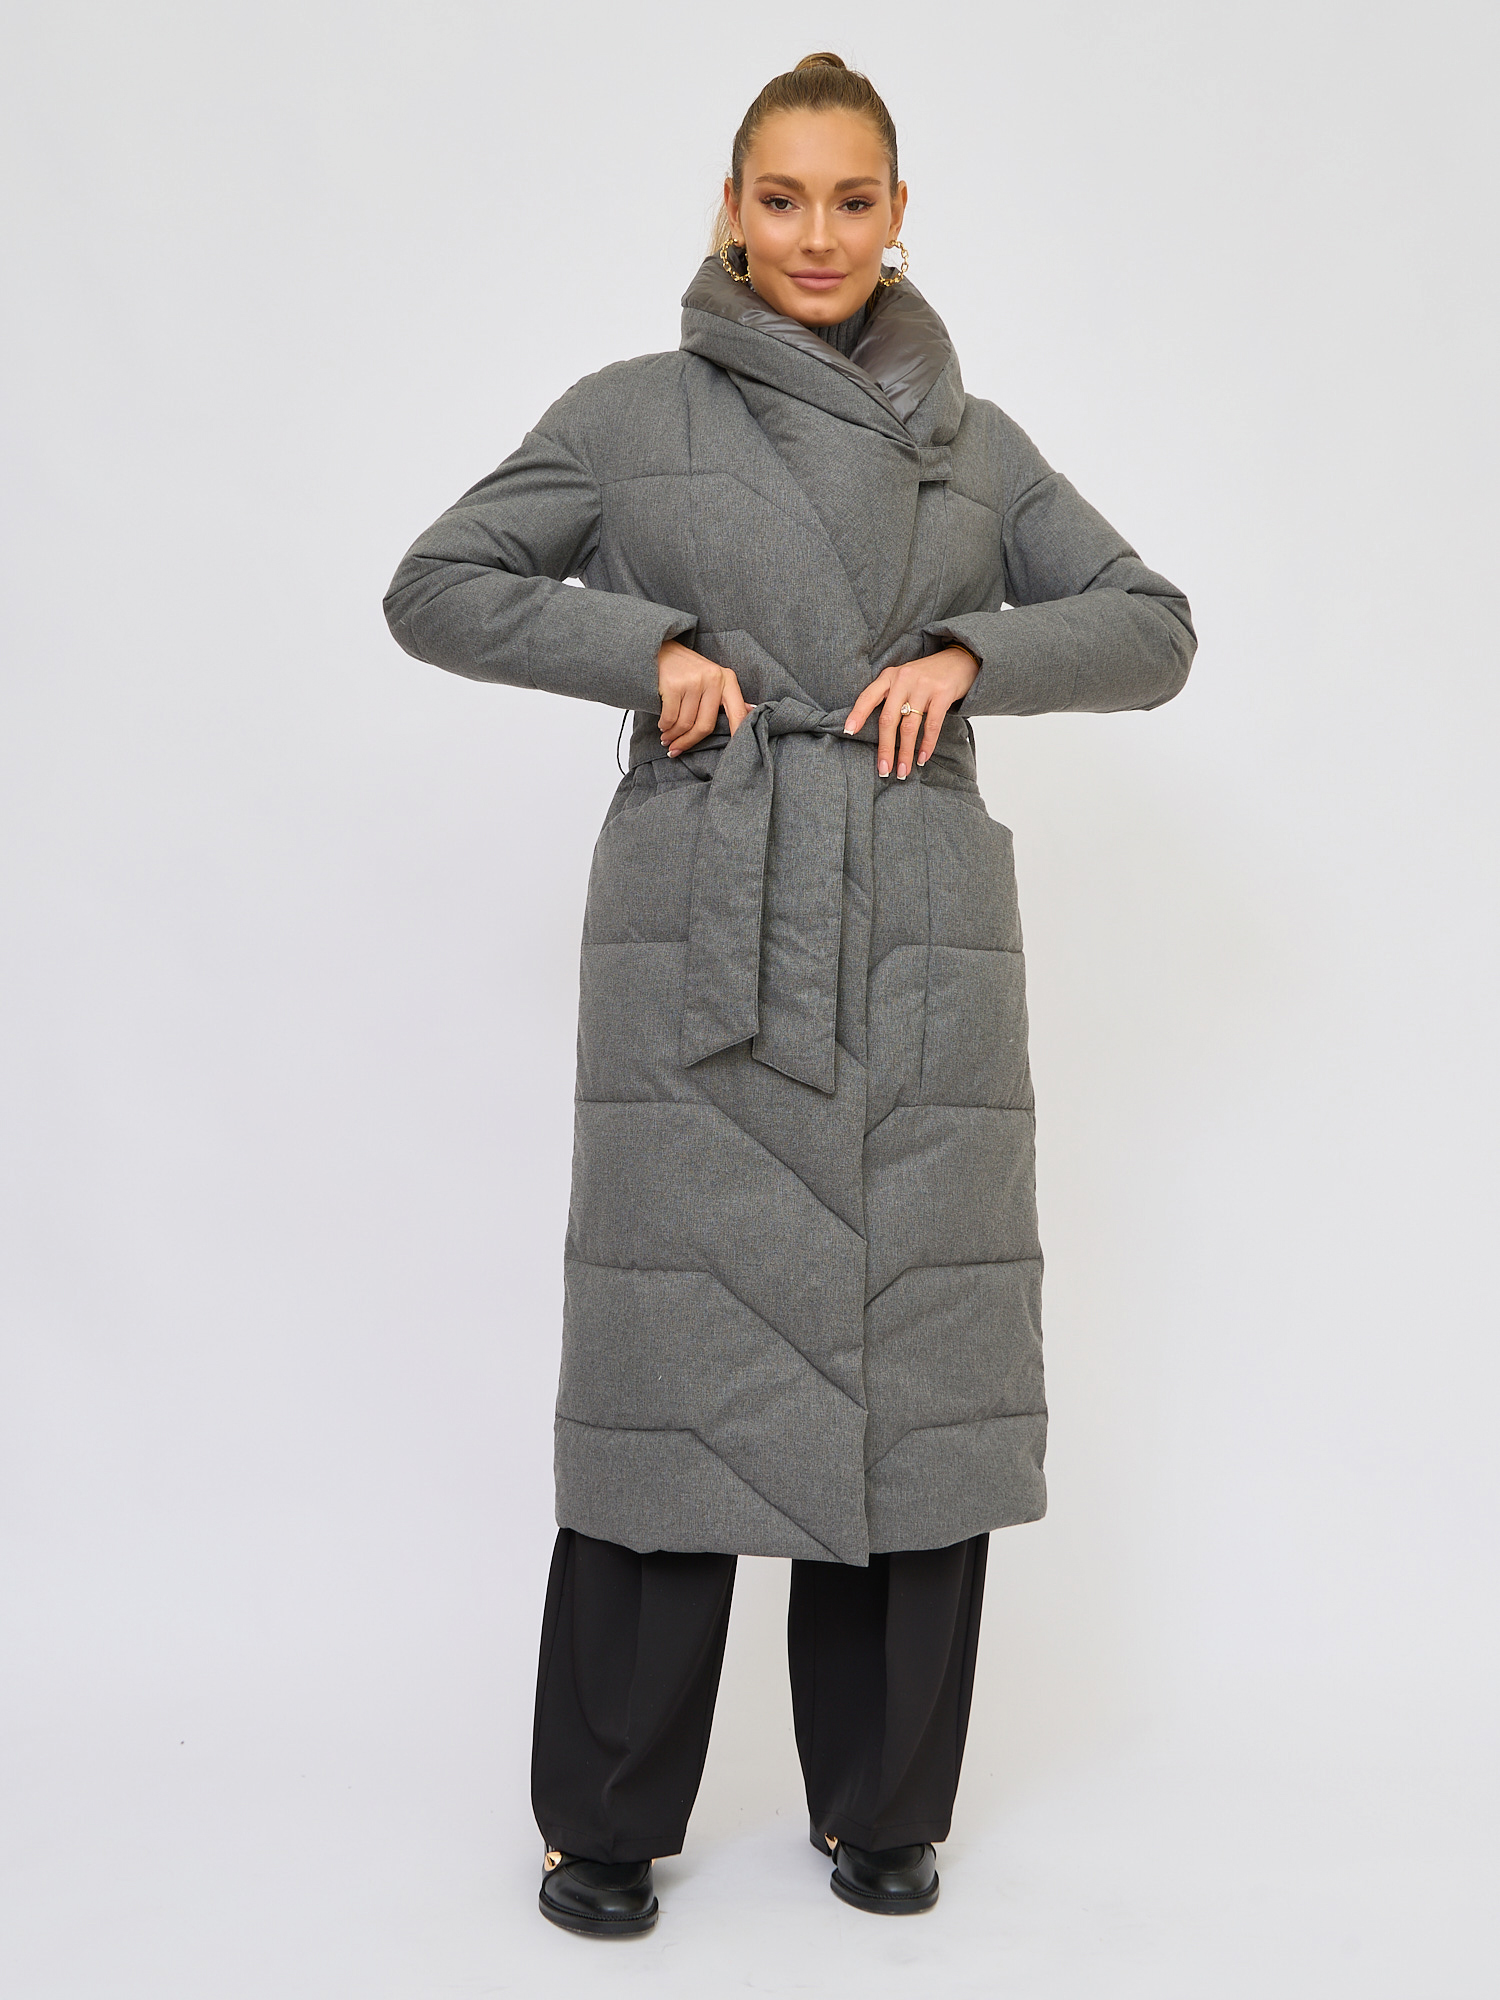 Пальто женское Olya Stoff OS40007 серое 48 RU